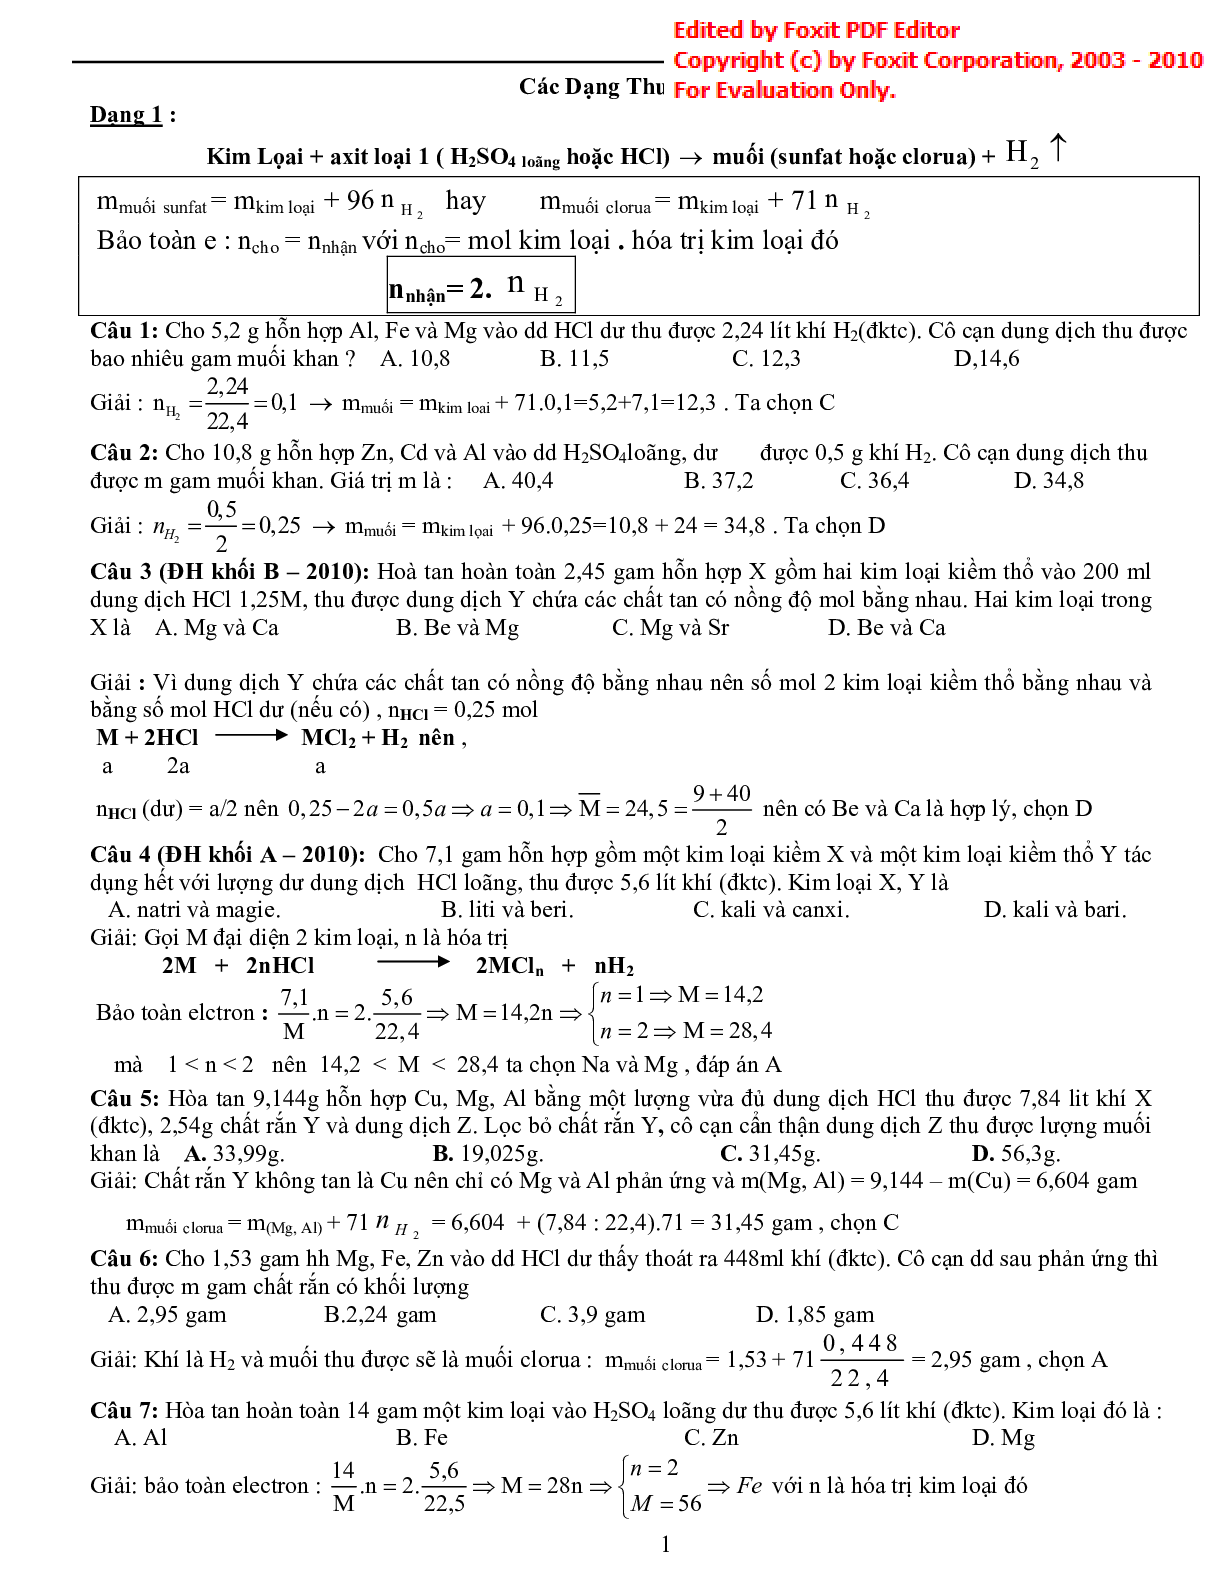 Bài tập về tổng hợp phương pháp giải nhanh hóa vô cơ có đáp án (trang 1)